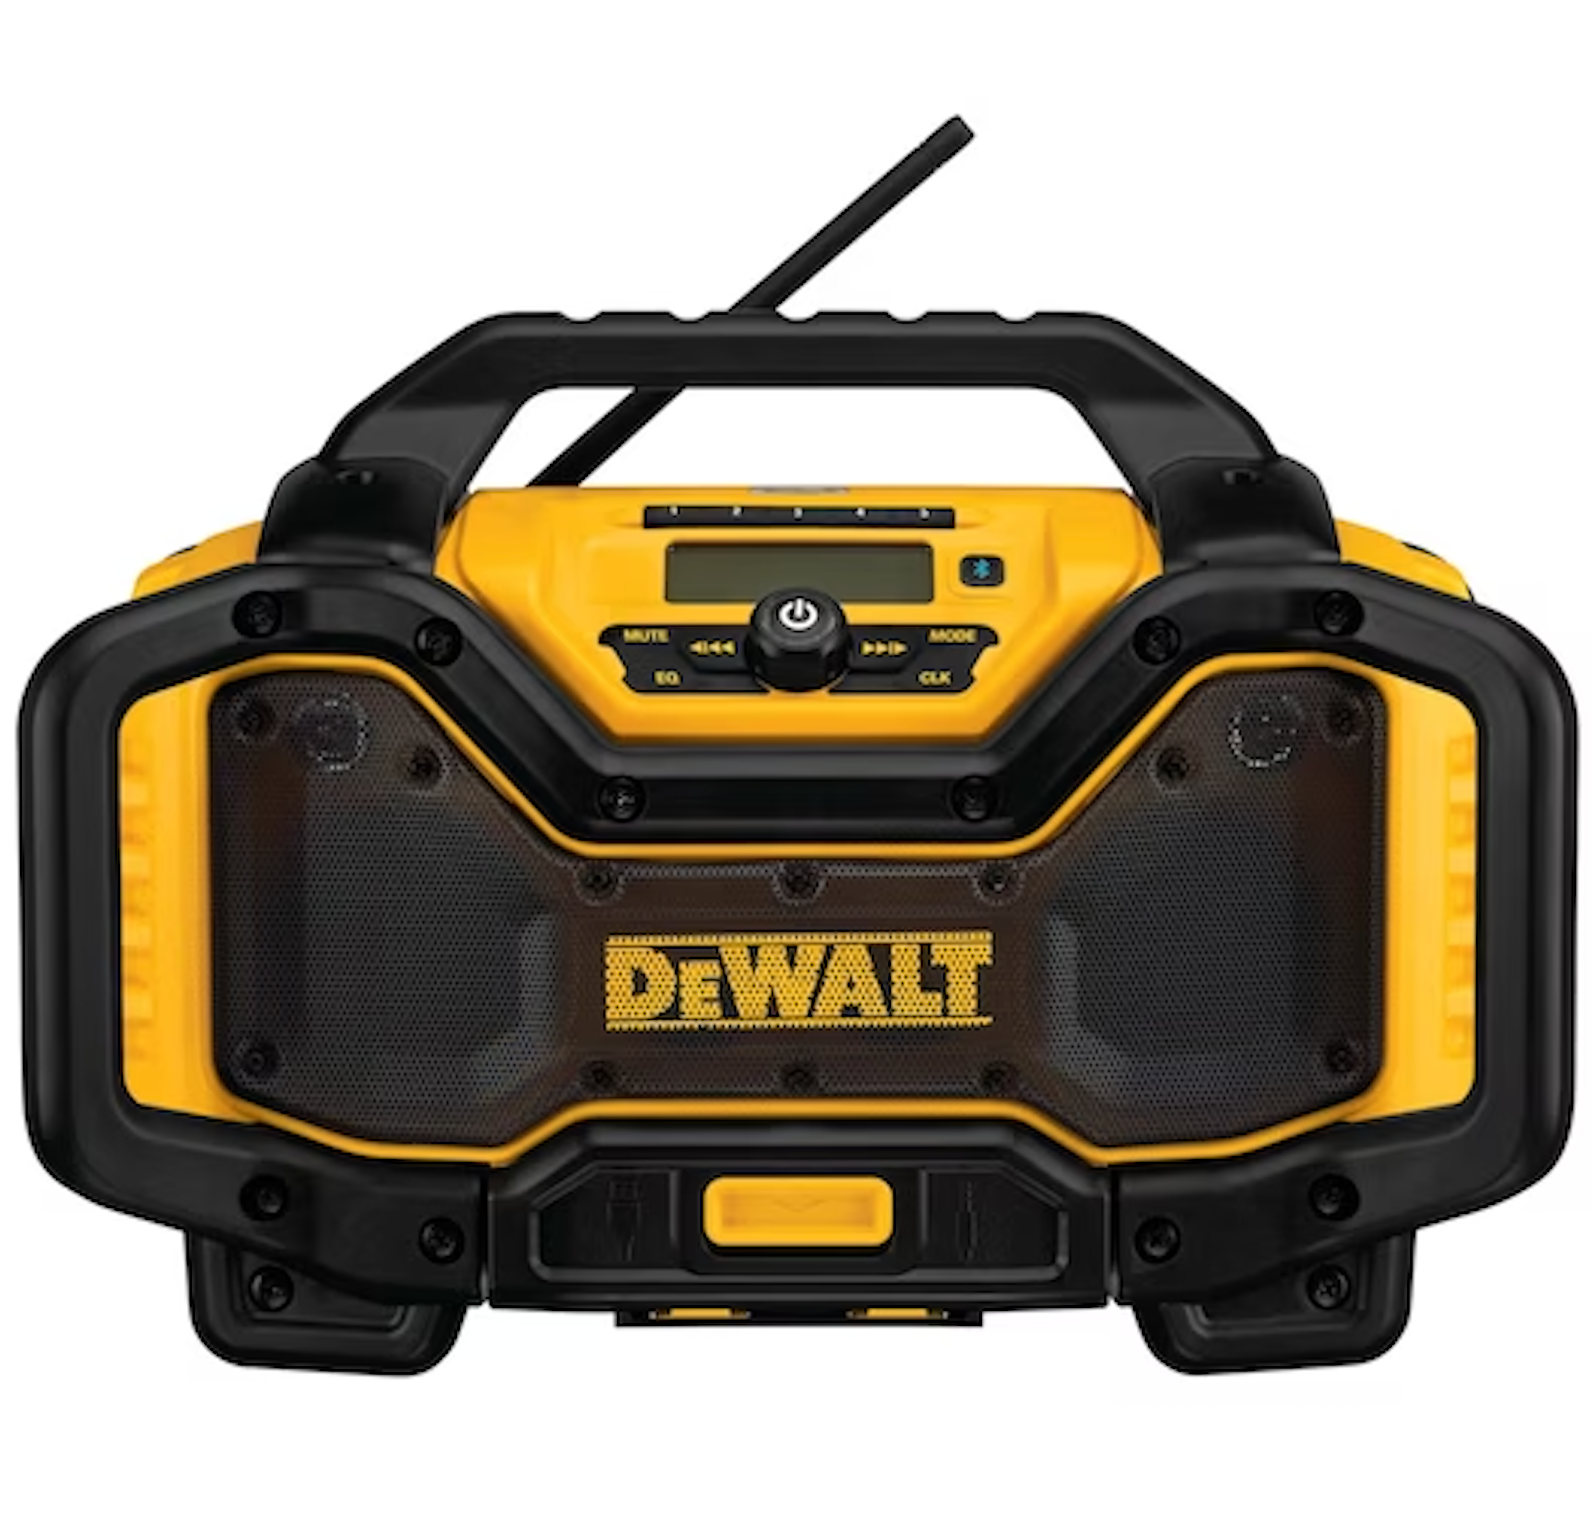 Radio/altavoz para el lugar de trabajo DeWALT con Bluetooth y cargador incorporado